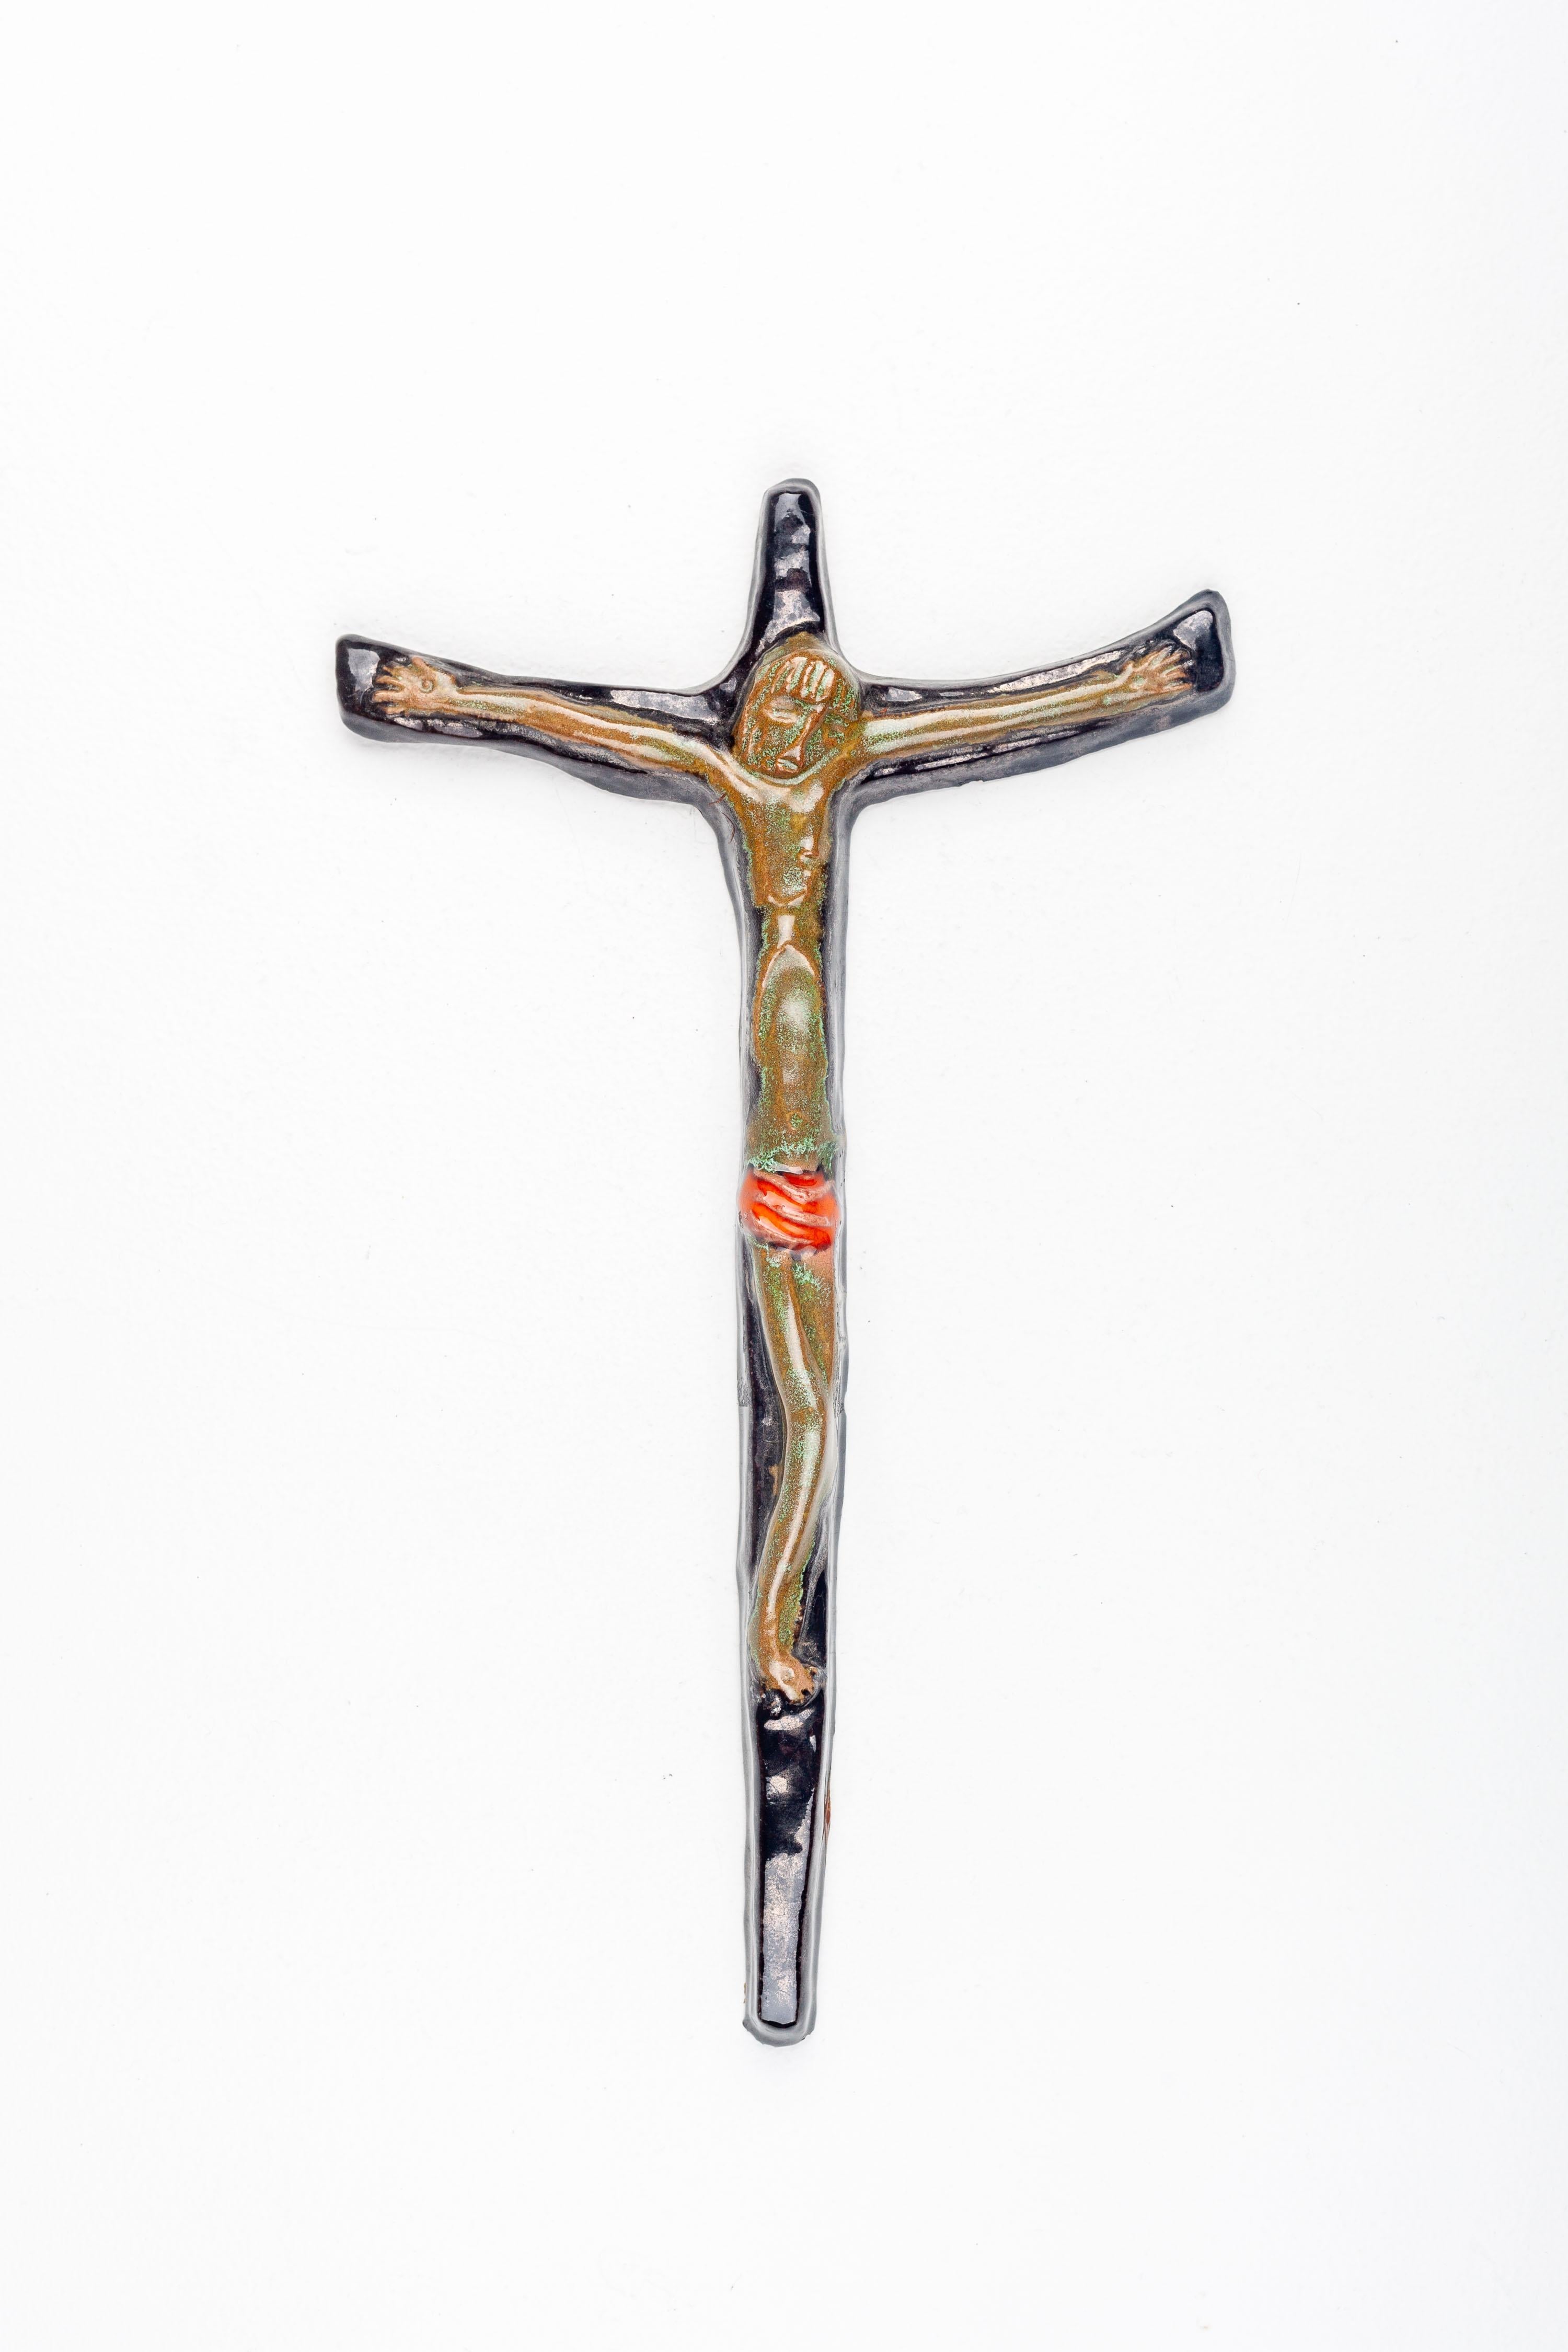 Cette croix murale en céramique est une pièce distinguée d'art religieux moderne du milieu du siècle, méticuleusement fabriquée à la main par des artistes européens de la poterie d'atelier. L'époque, connue pour ses lignes épurées et ses formes